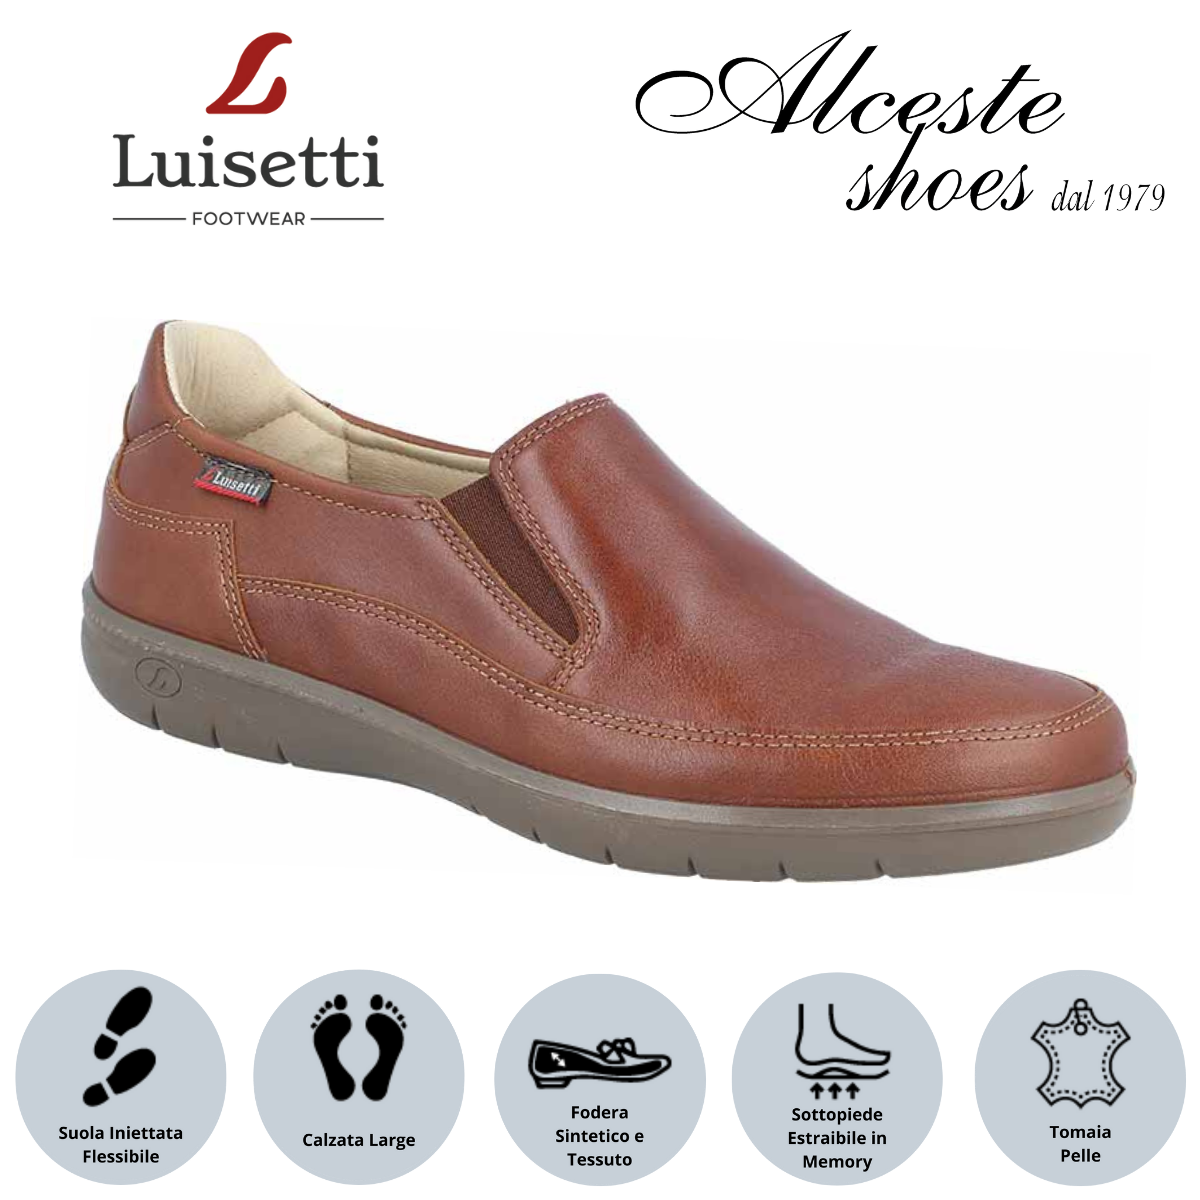 Mocassino Uomo Luisetti Art. 32302 in Pelle Cognac Alceste Shoes 7 1